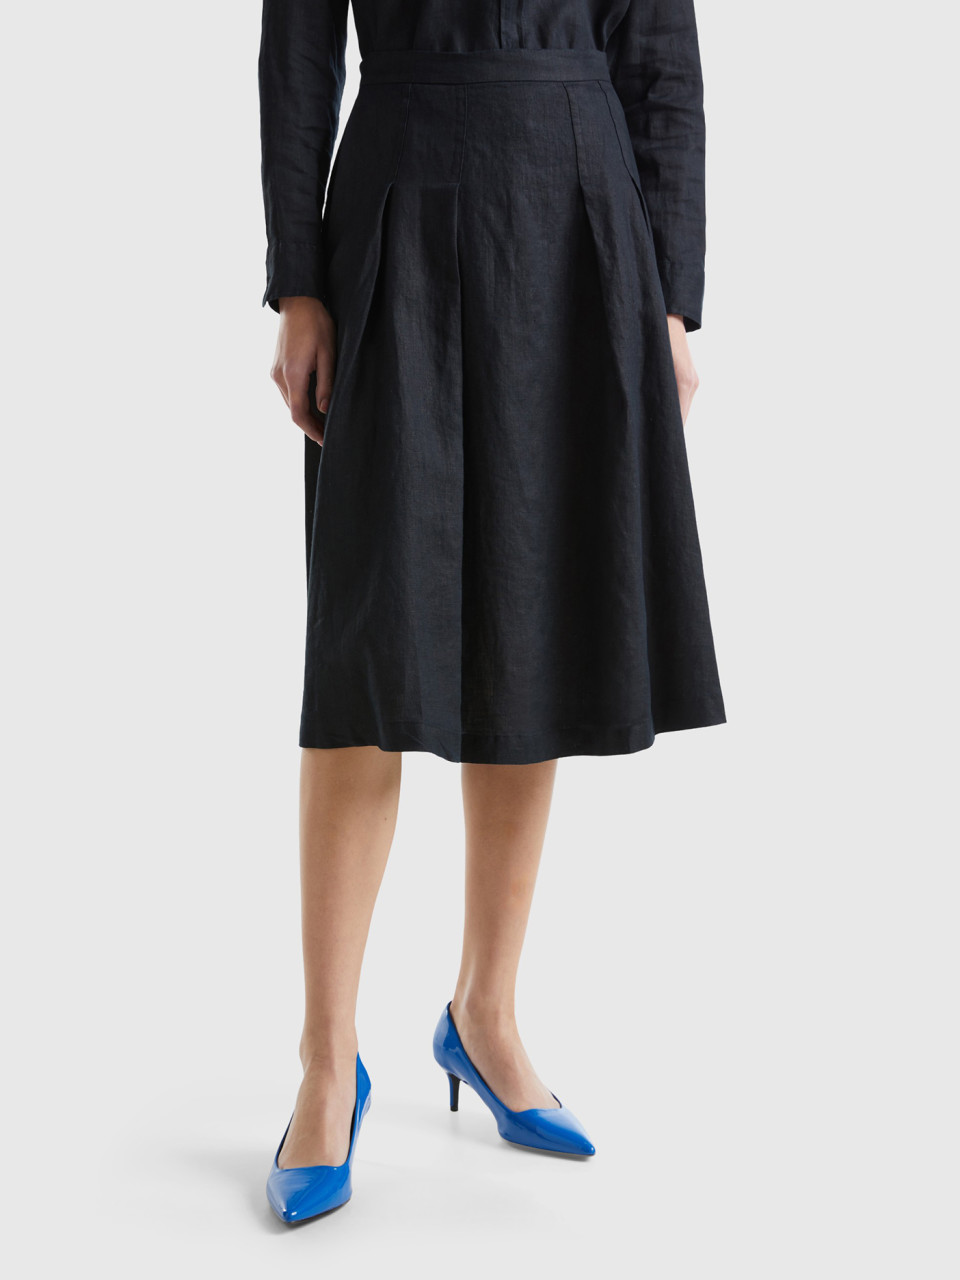 Benetton, Midi Skirt In Pure Linen, Black, Women